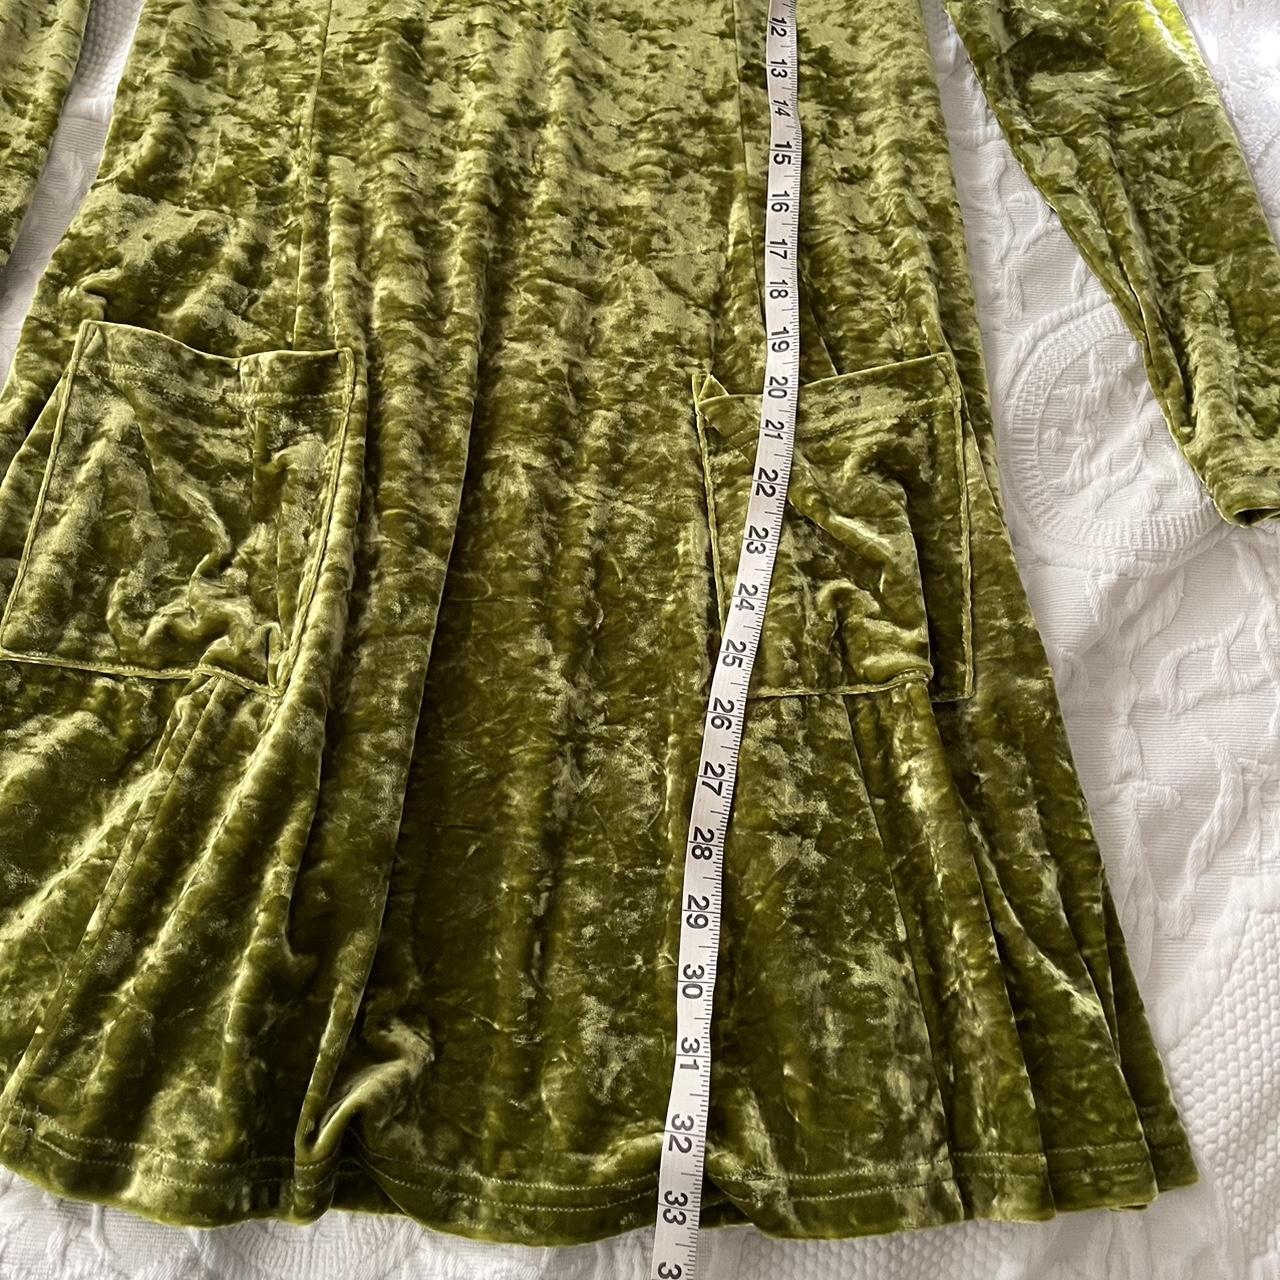 Vintage crushed velvet green mini dress • Excellent... - Depop